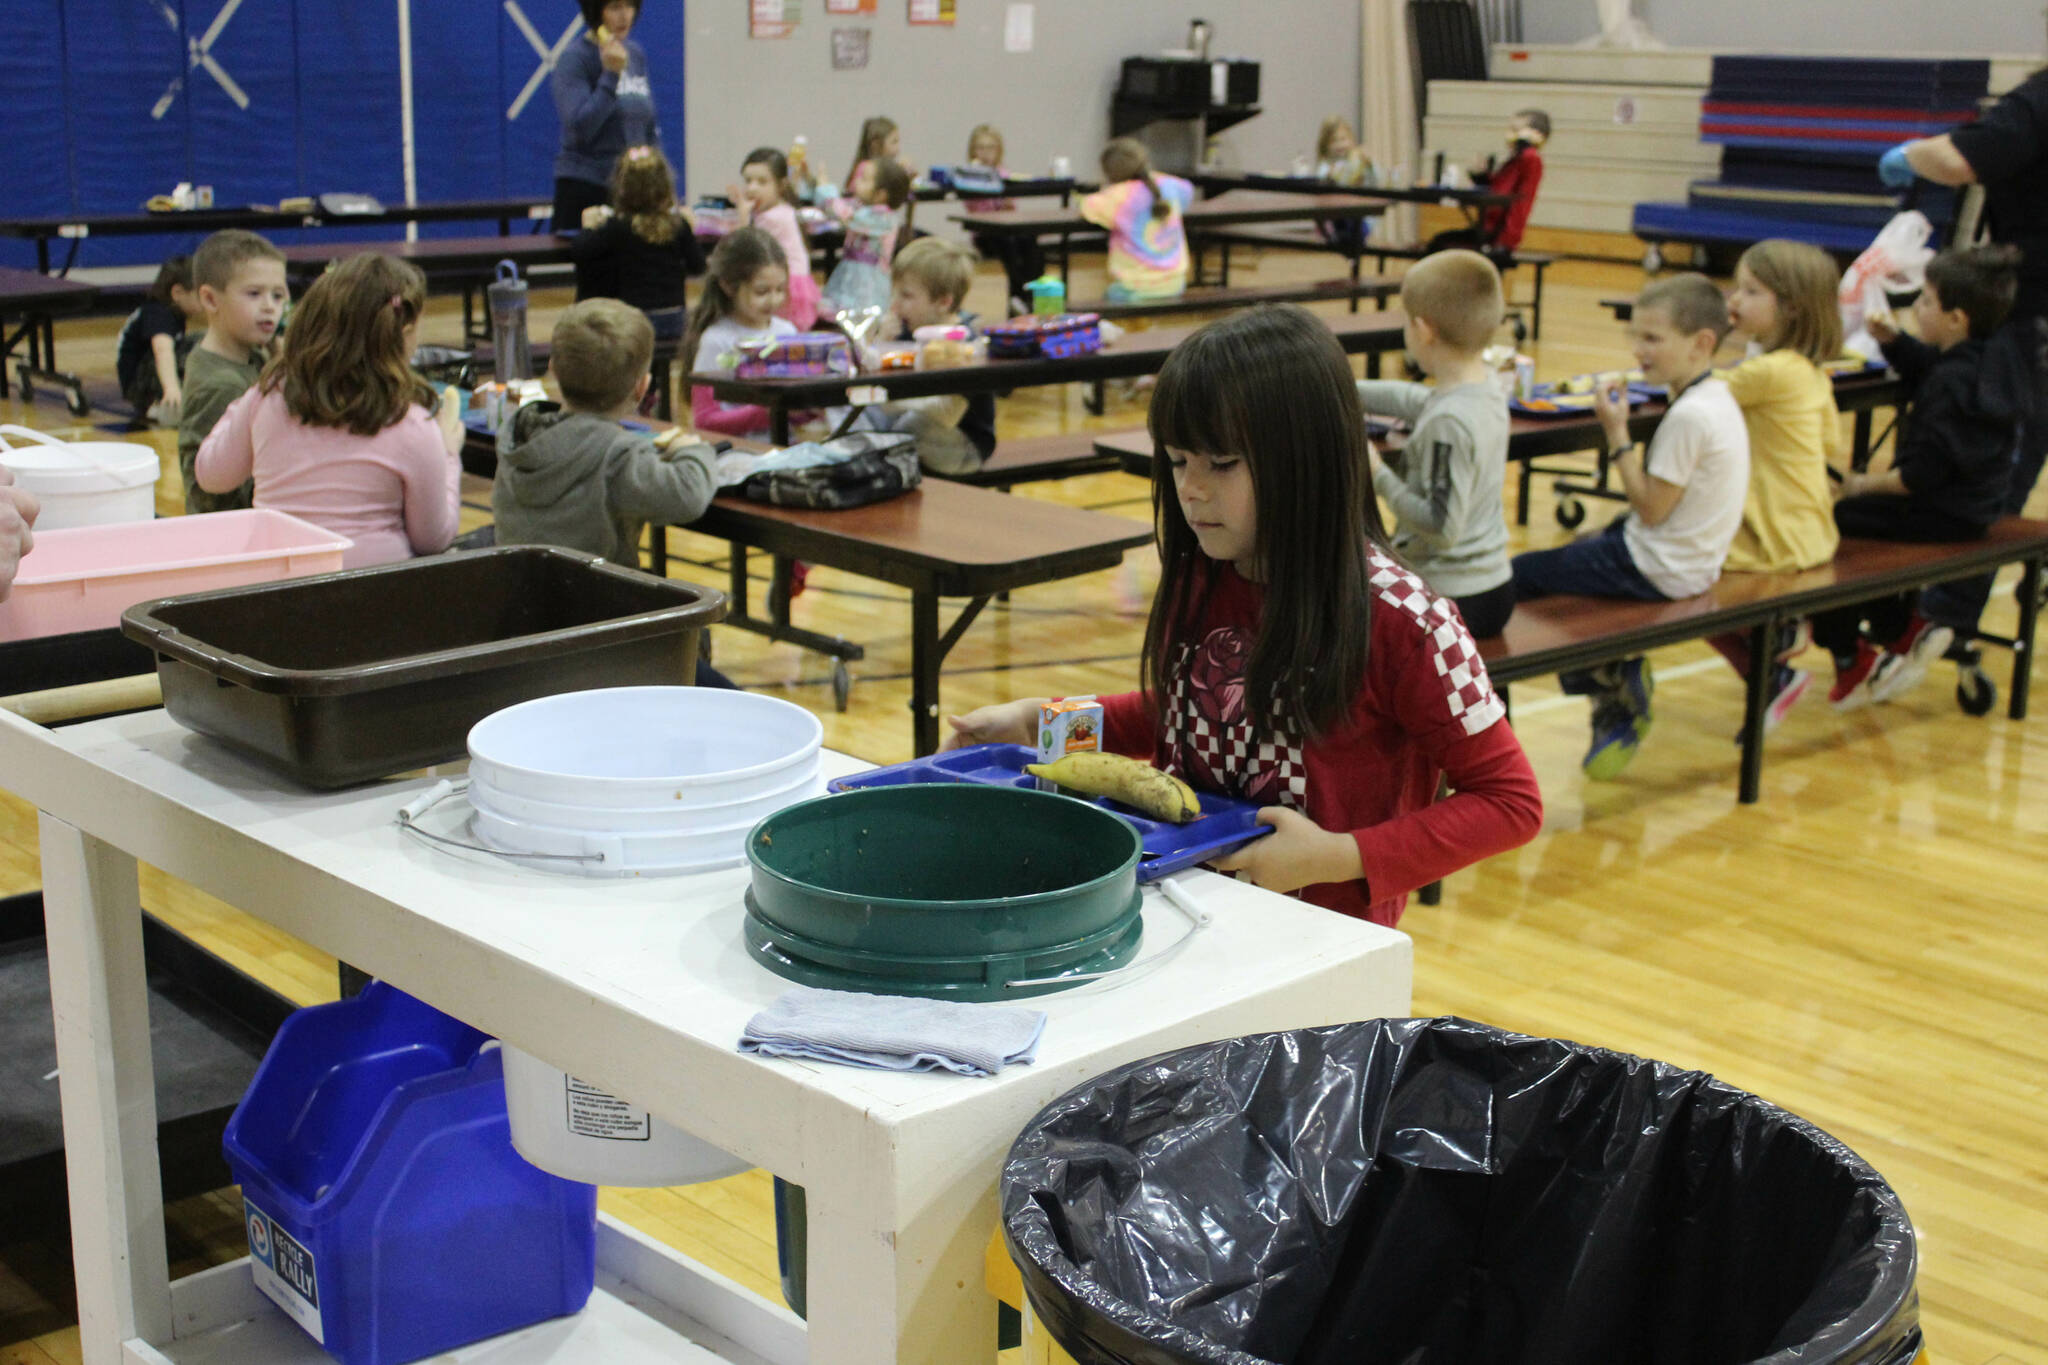 Grecia Martinez Sandstrom, second grade, disposes of lunch materials at Sterling Elementary School on Thursday, Nov. 10, 2022, in Sterling, Alaska. (Ashlyn O’Hara/Peninsula Clarion)